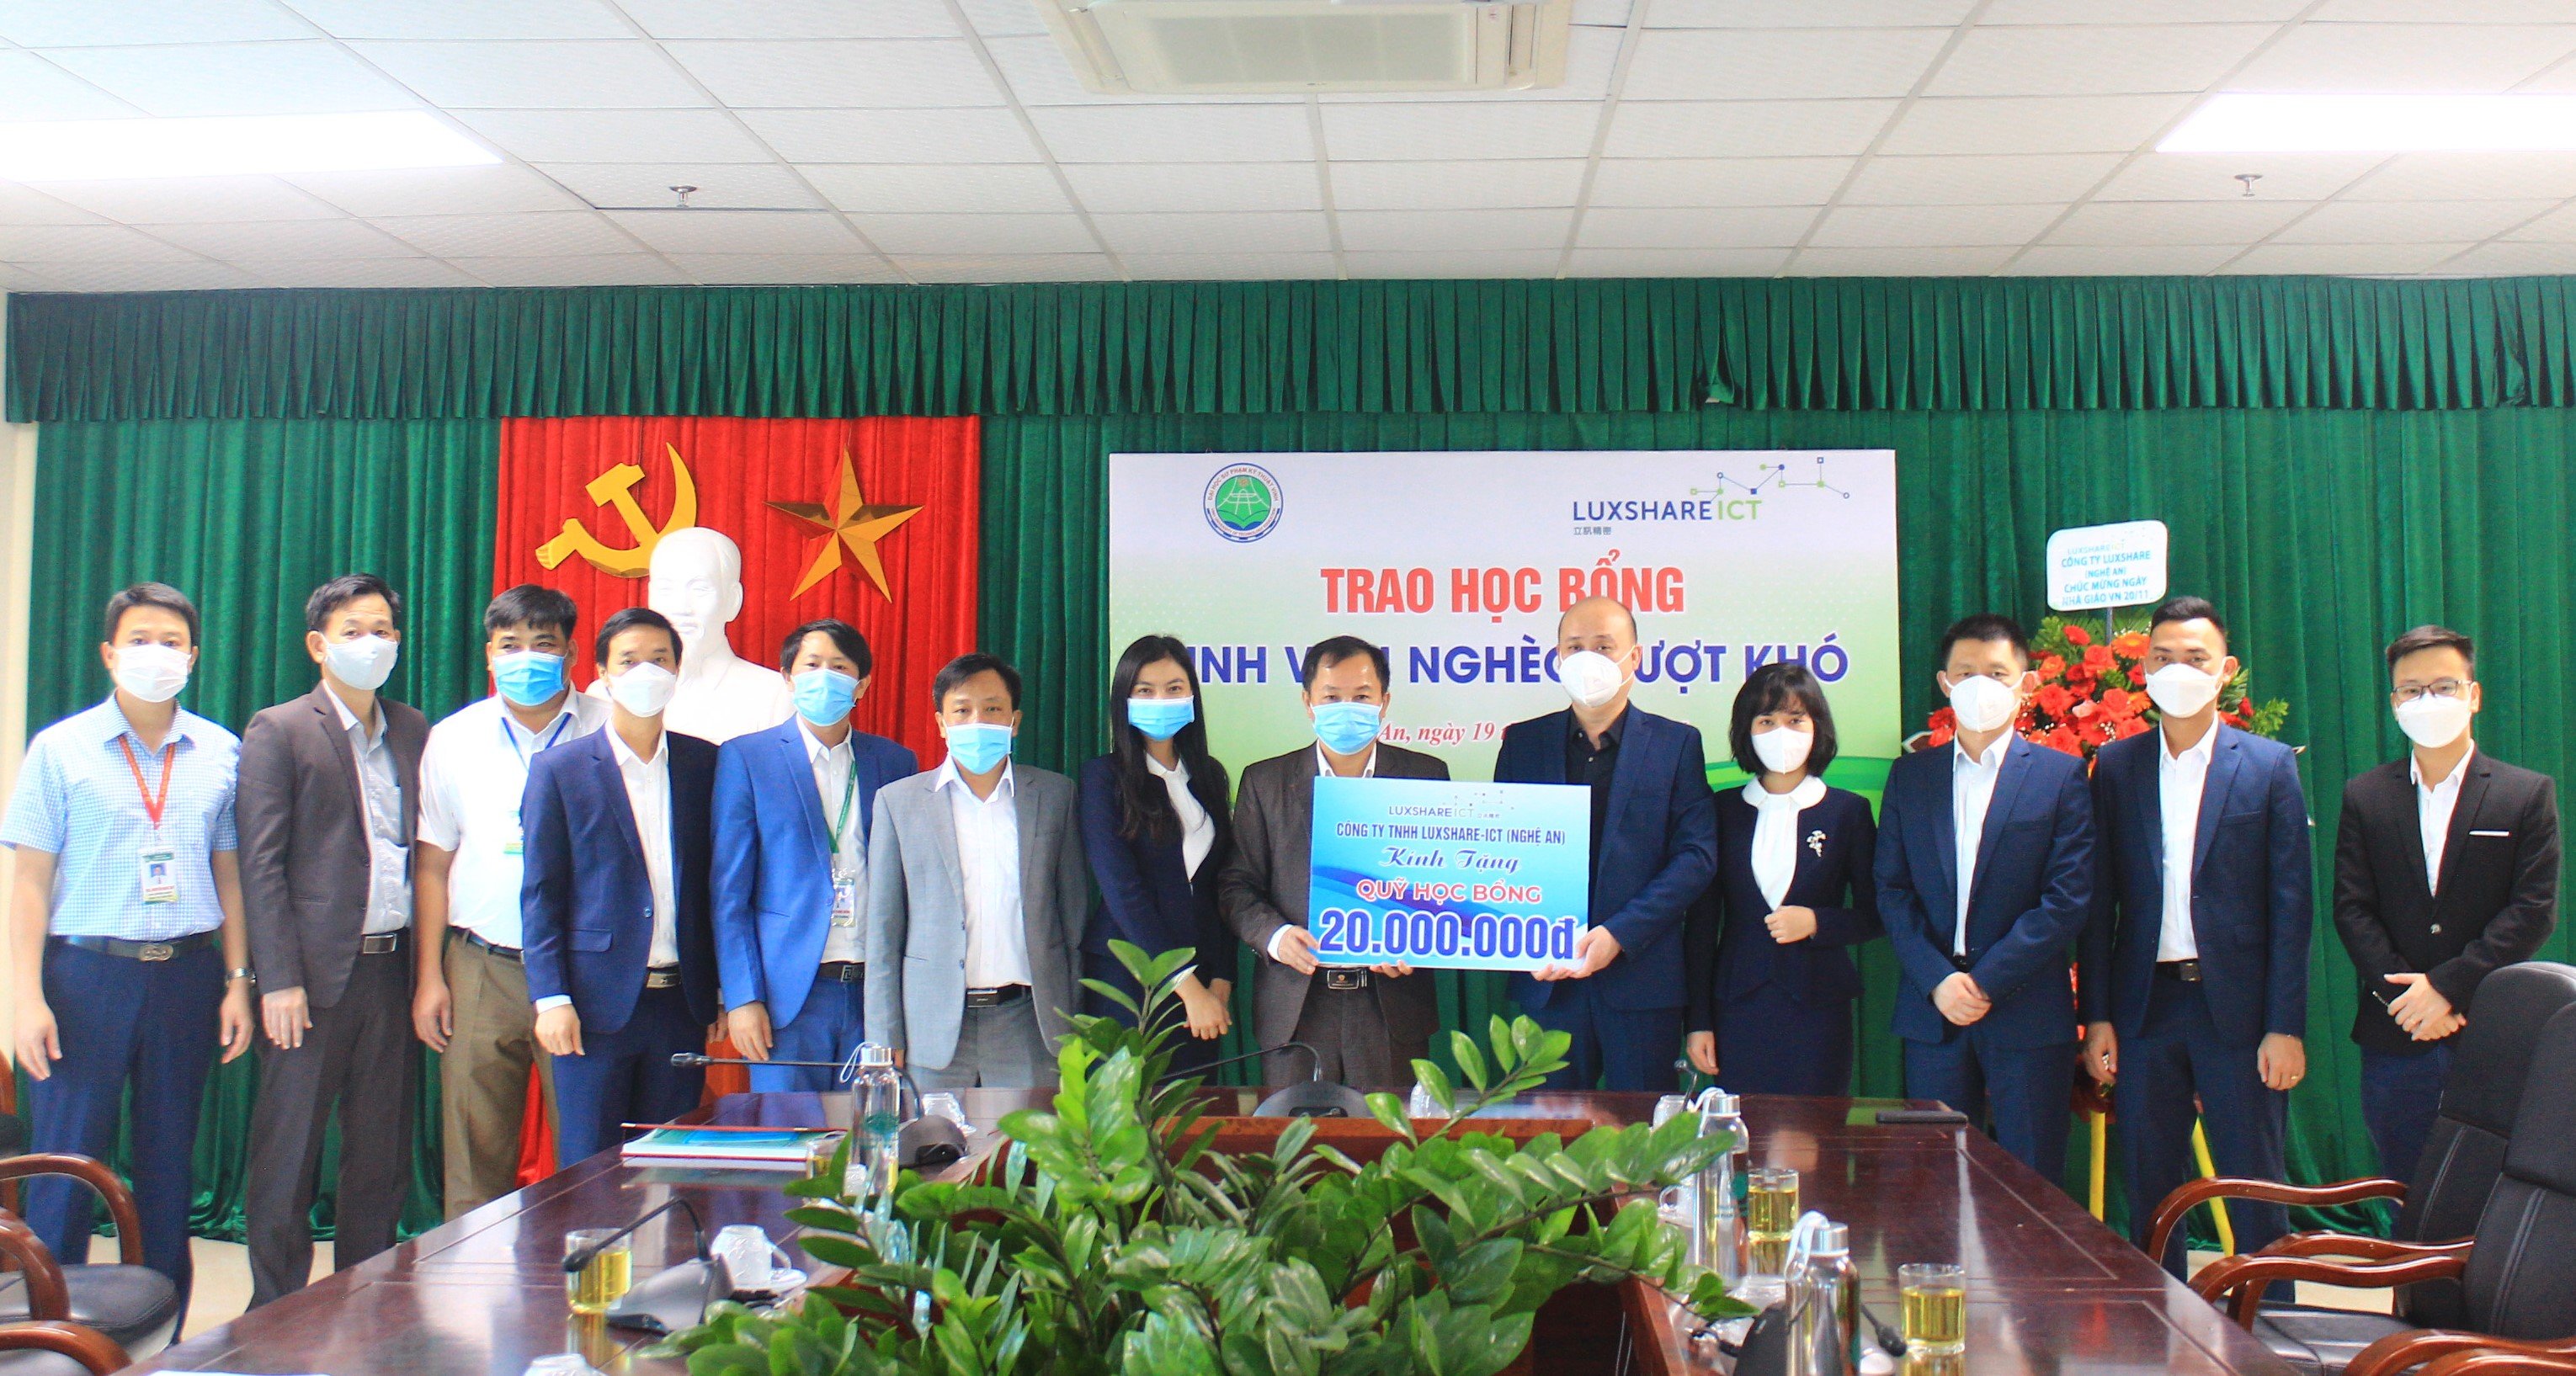 Chương trình trao học bổng sinh viên nghèo vượt khó của công ty TNHH LUXSHARE – ICT (Nghệ An).